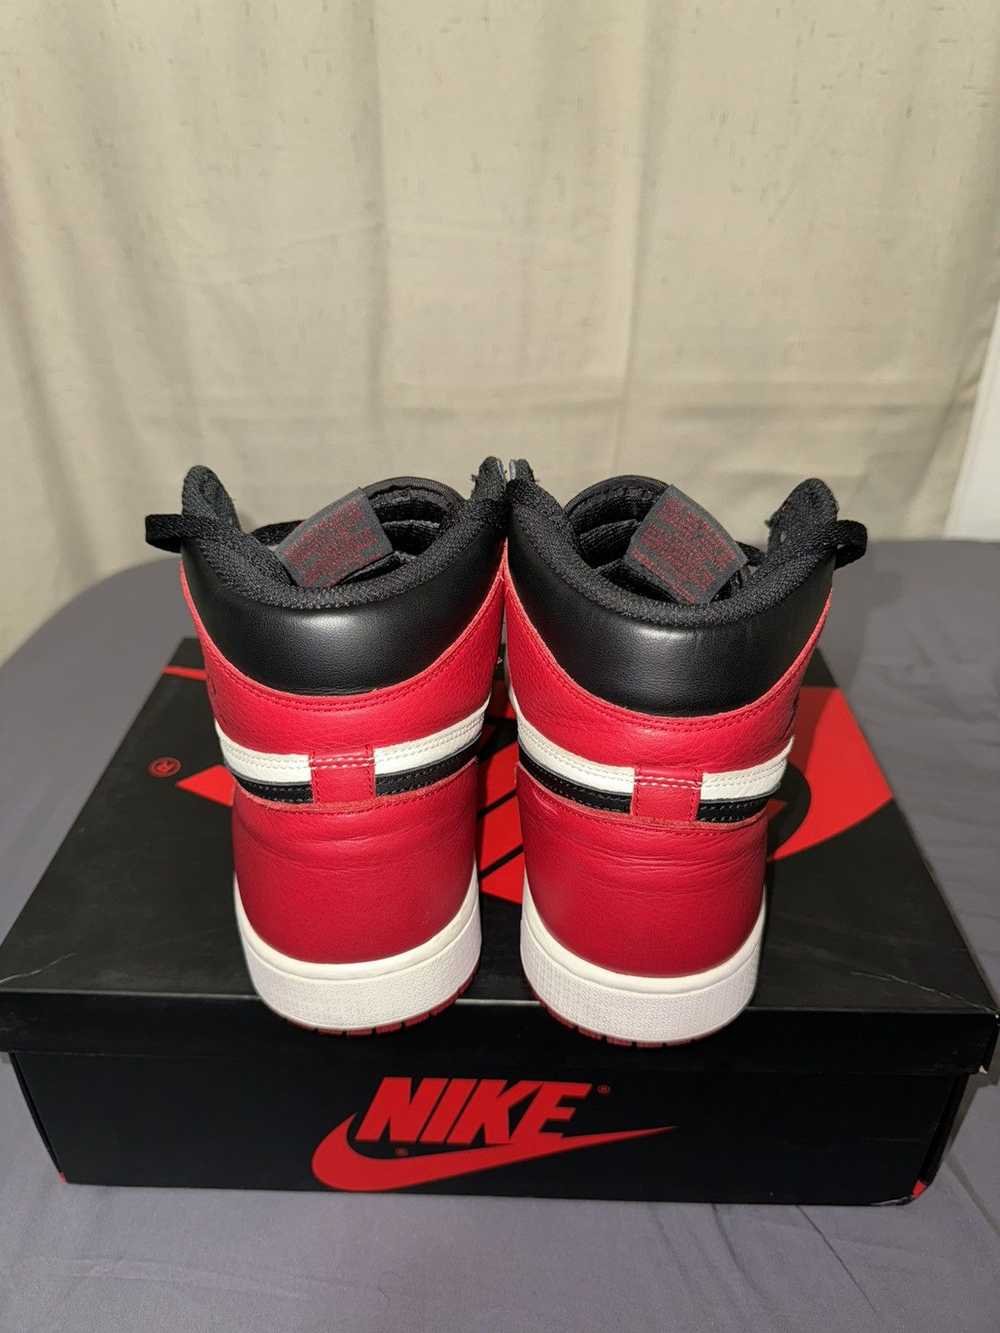 Jordan Brand × Nike Jordan 1 Bred Toe - image 2